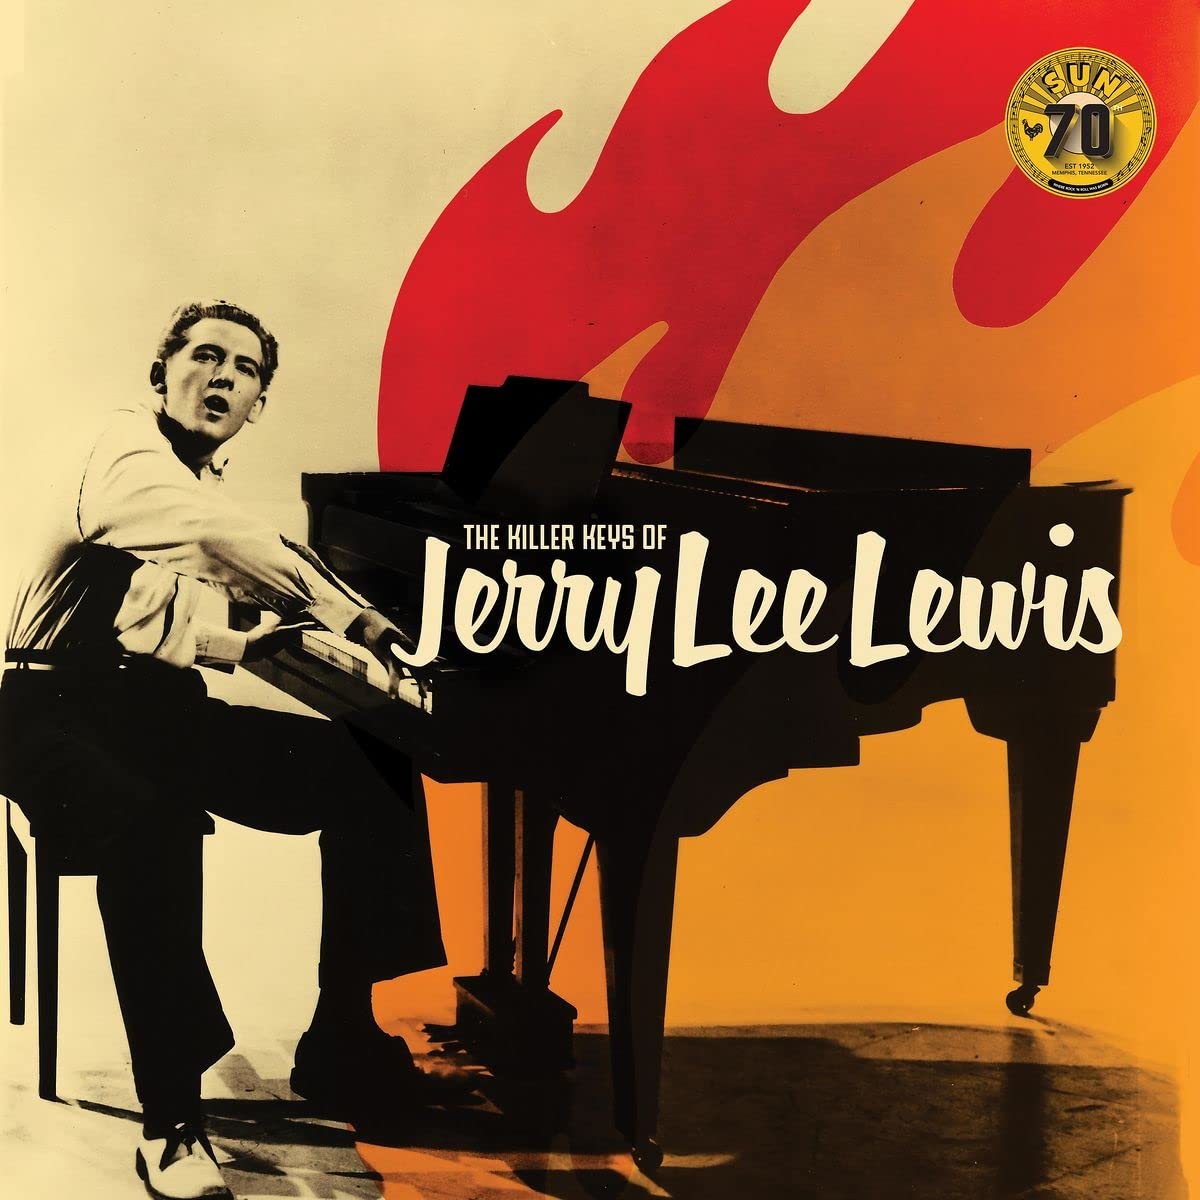 Виниловая пластинка Lewis, Jerry Lee, Killer Keys Of (0015047805167) виниловые пластинки jerry lee lewis джерри ли льюис the se